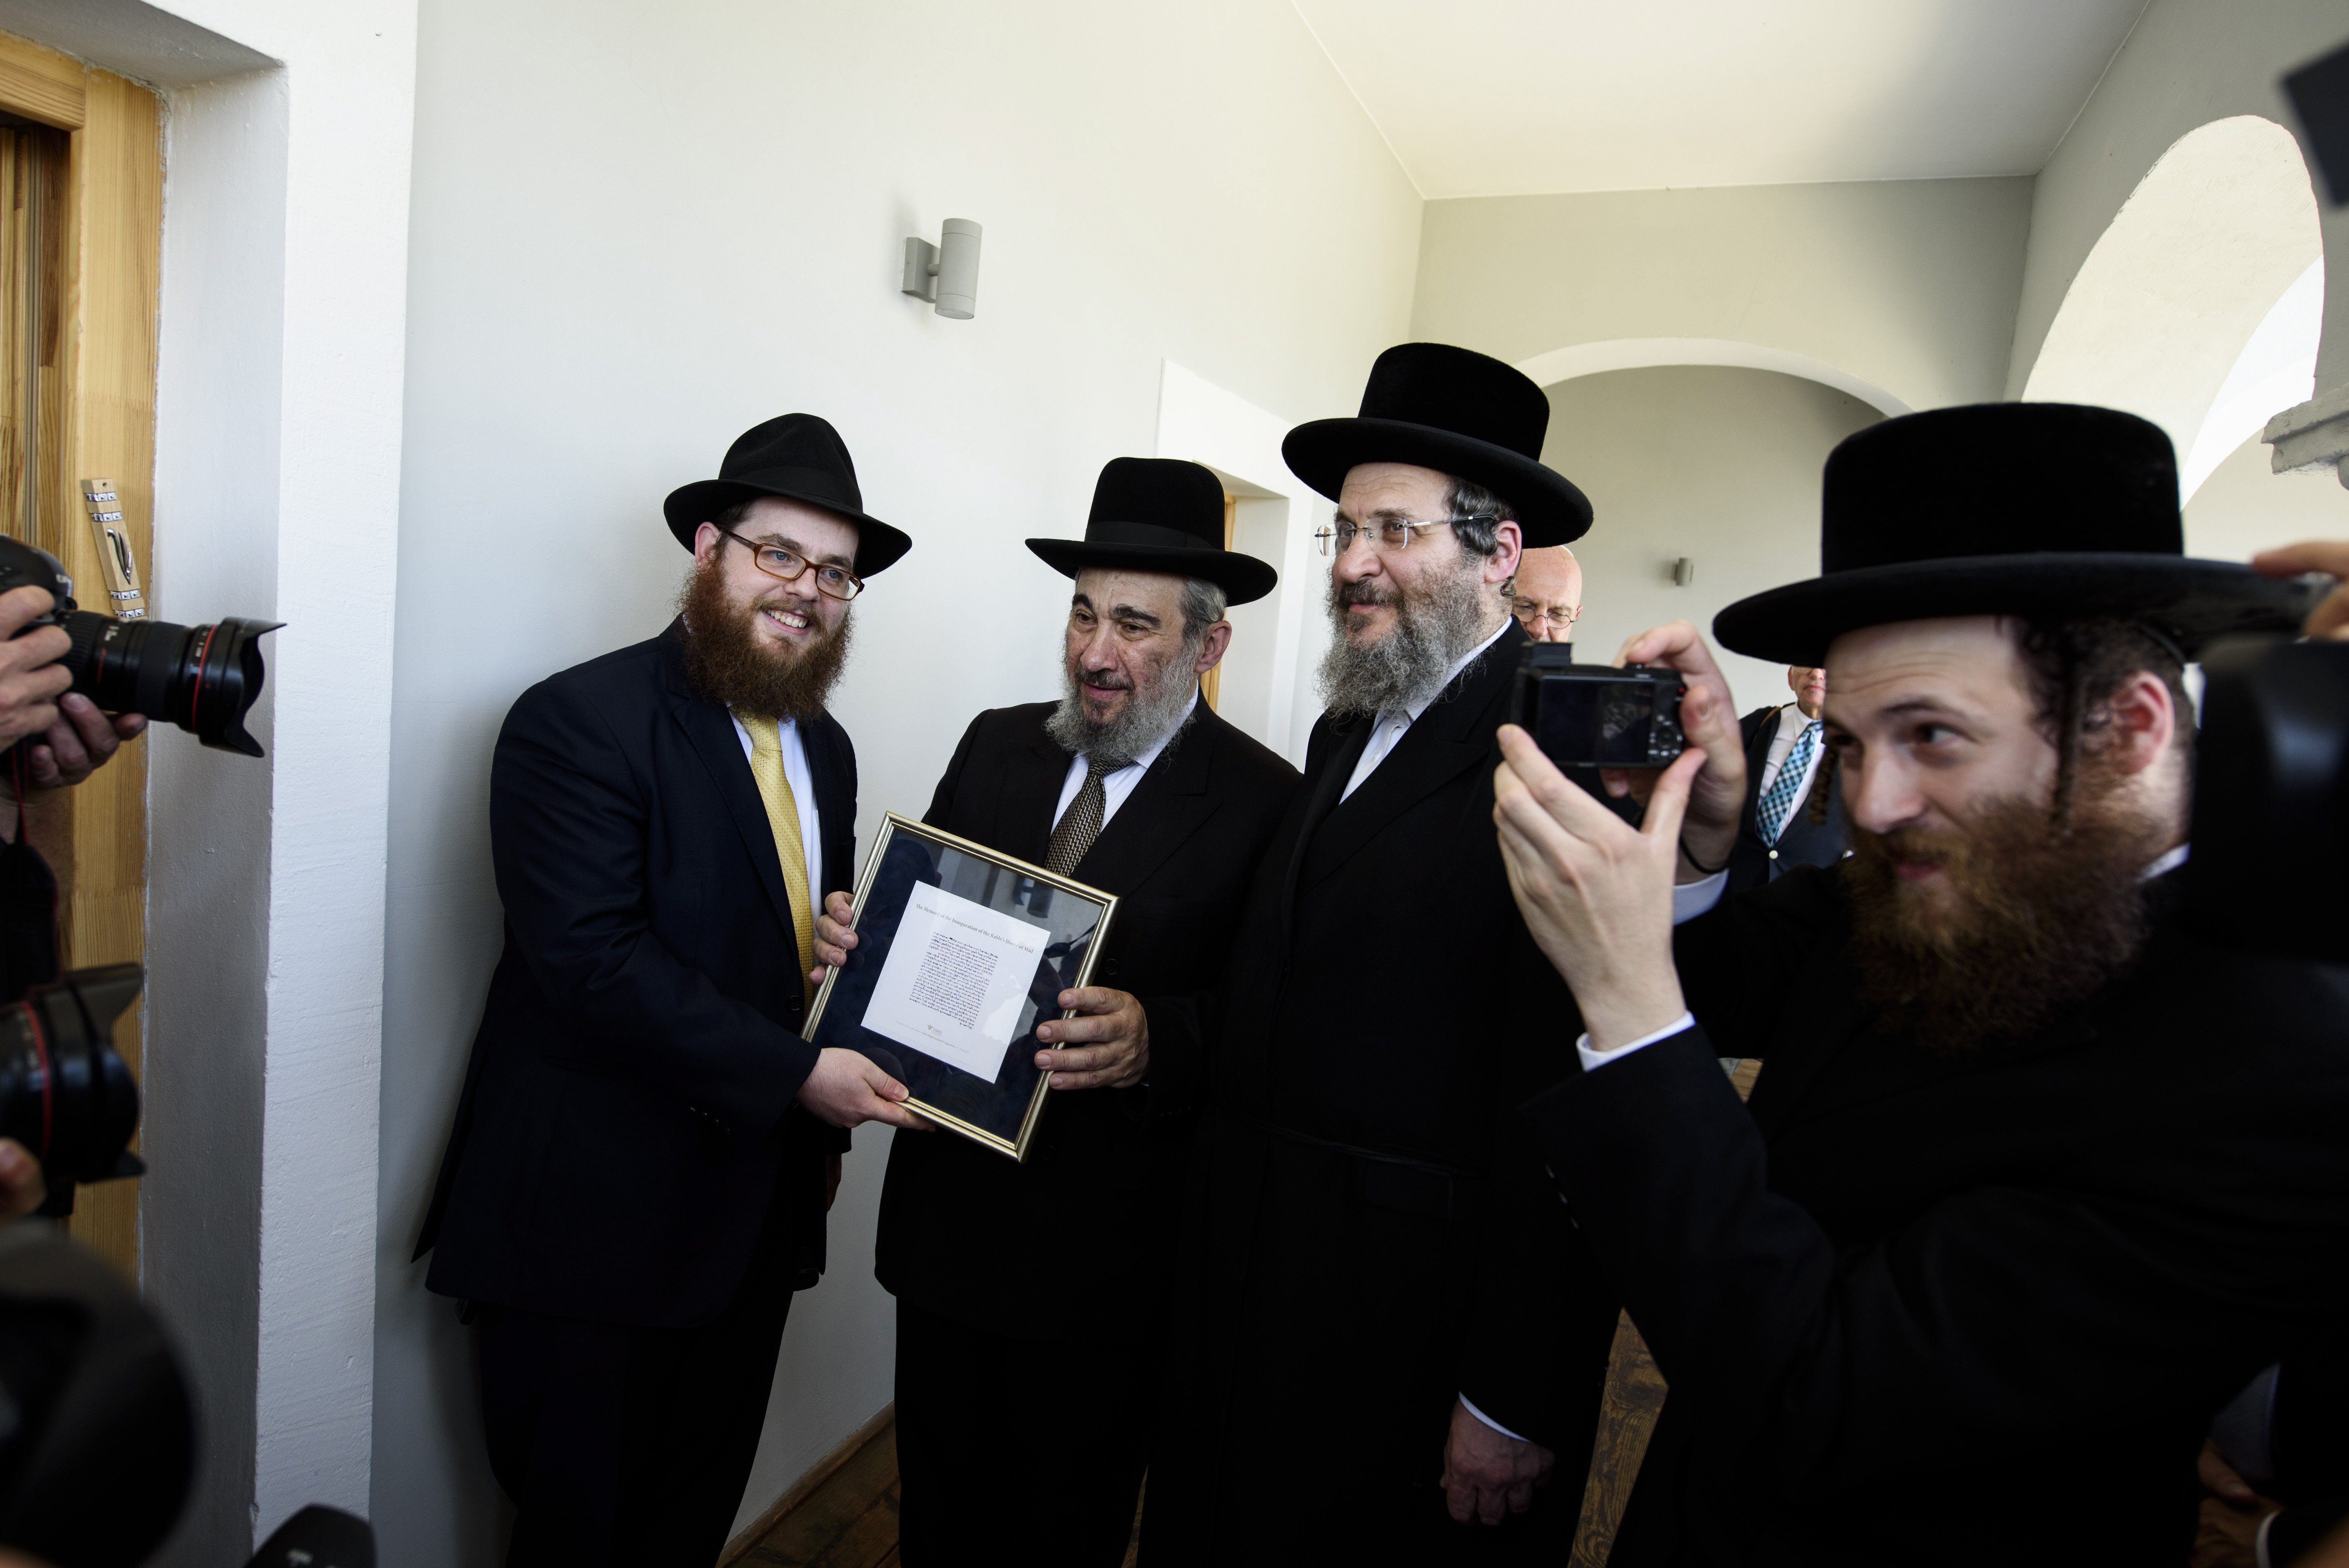 Mád, 2016. július 21. Köves Slomó, az EMIH vezetõ rabbija (b), Joel Ehrenreich rabbi (b2) és Naftoli Ehrenreich rabbi, az utolsó mádi rabbi, Ehrenreich Eliezer fia (b3)  a Mádi Rabbiház avatóünnepségén 2016. július 21-én. A rabbiház a Tokaj-hegyalja zsidó kulturális örökségi helyszíneit összekötõ zarándokút fejlesztése részeként újult meg. Az összesen 525 milliós projekthez az Egységes Magyarországi Izraelita Hitközség (EMIH) 460 millió forint európai uniós támogatást kapott. MTI Fotó: Komka Péter